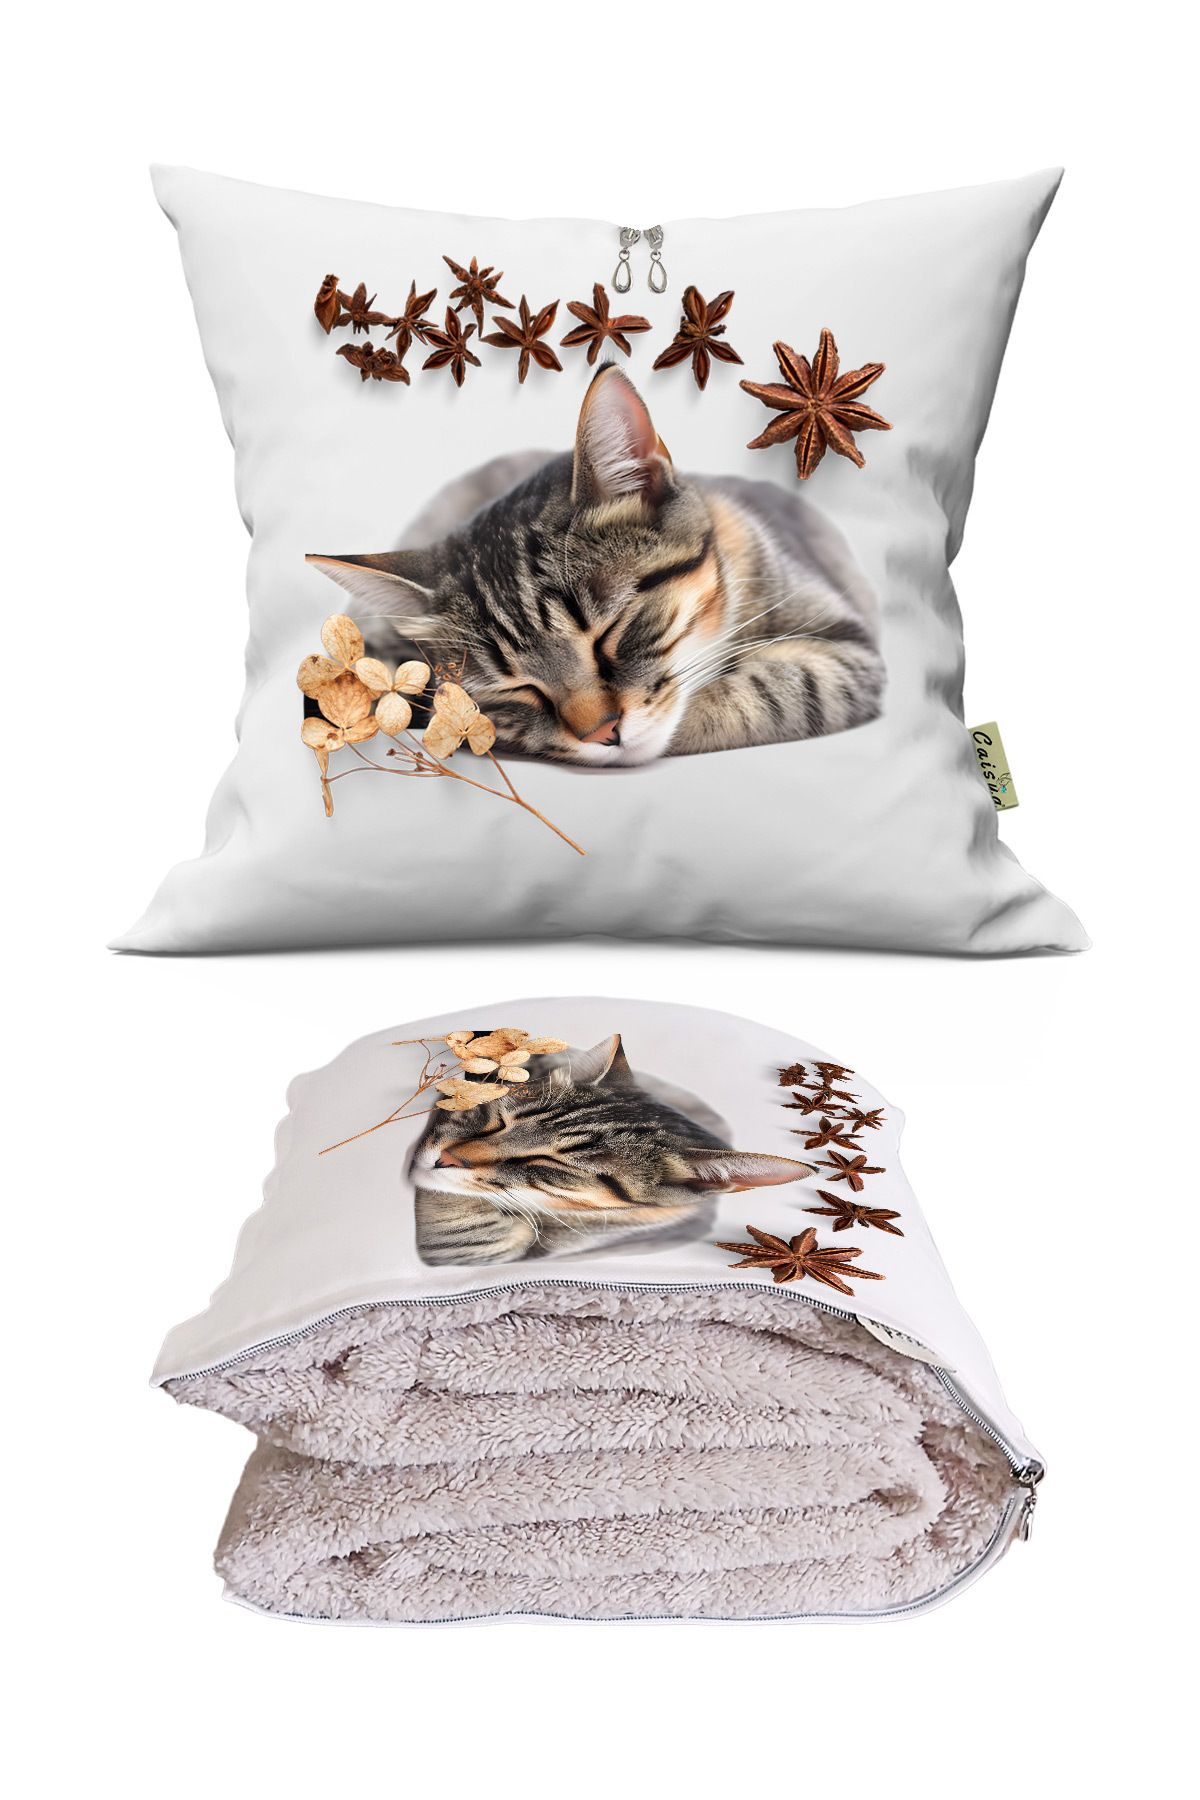 CeyCan Home Sevimli Kedi Cute Cat Baskılı Tv Battaniyeli Opsiyonel Dekoratif Kırlent Yastık